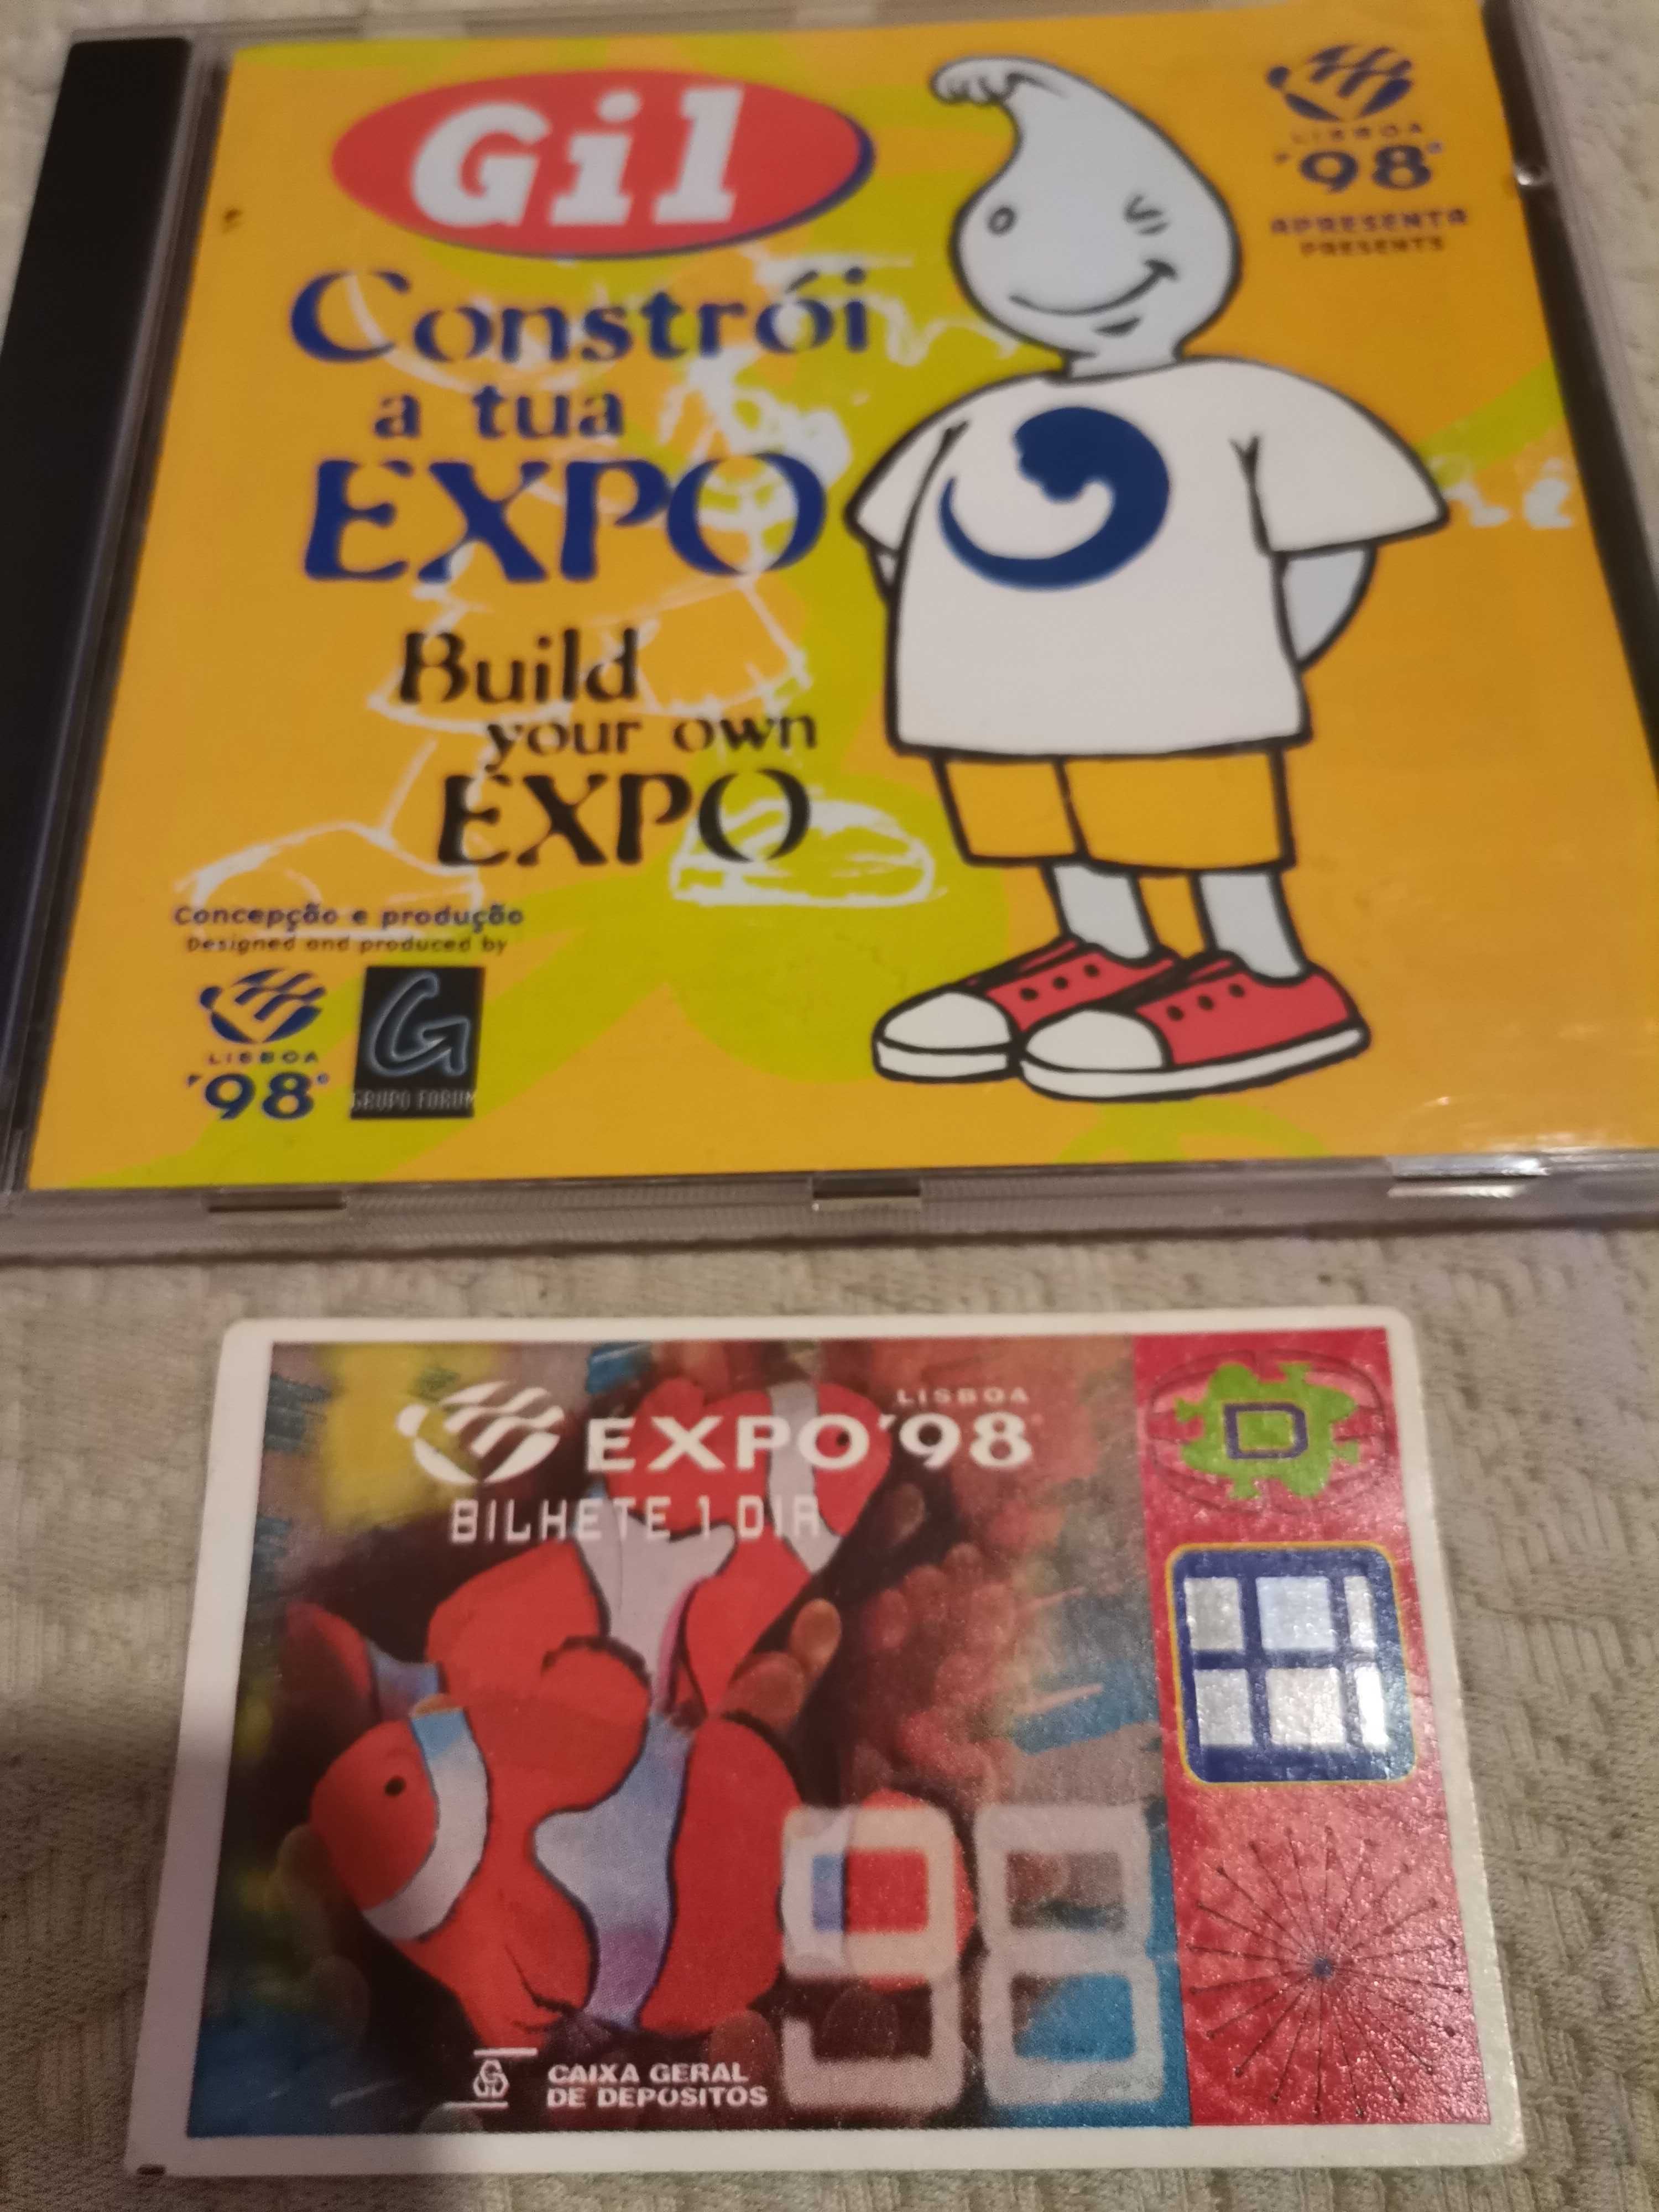 Bilhete Expo 98 + CD pc-rom